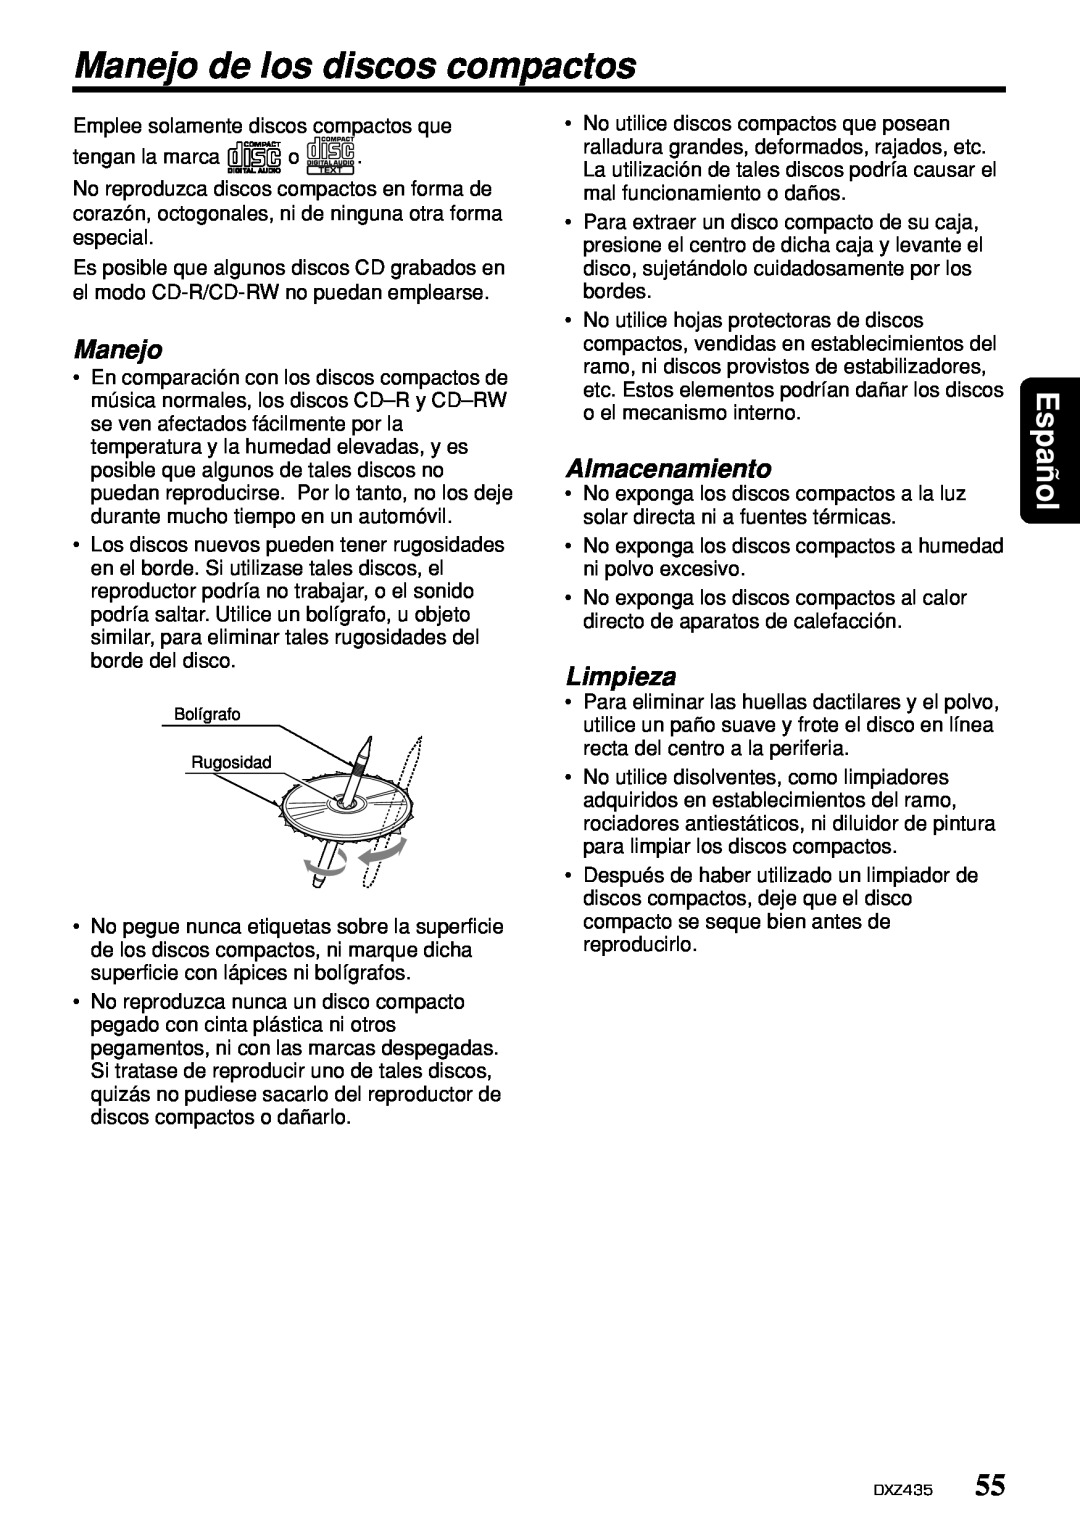 Clarion DXZ435 owner manual Manejo de los discos compactos, Almacenamiento, Limpieza, Español 